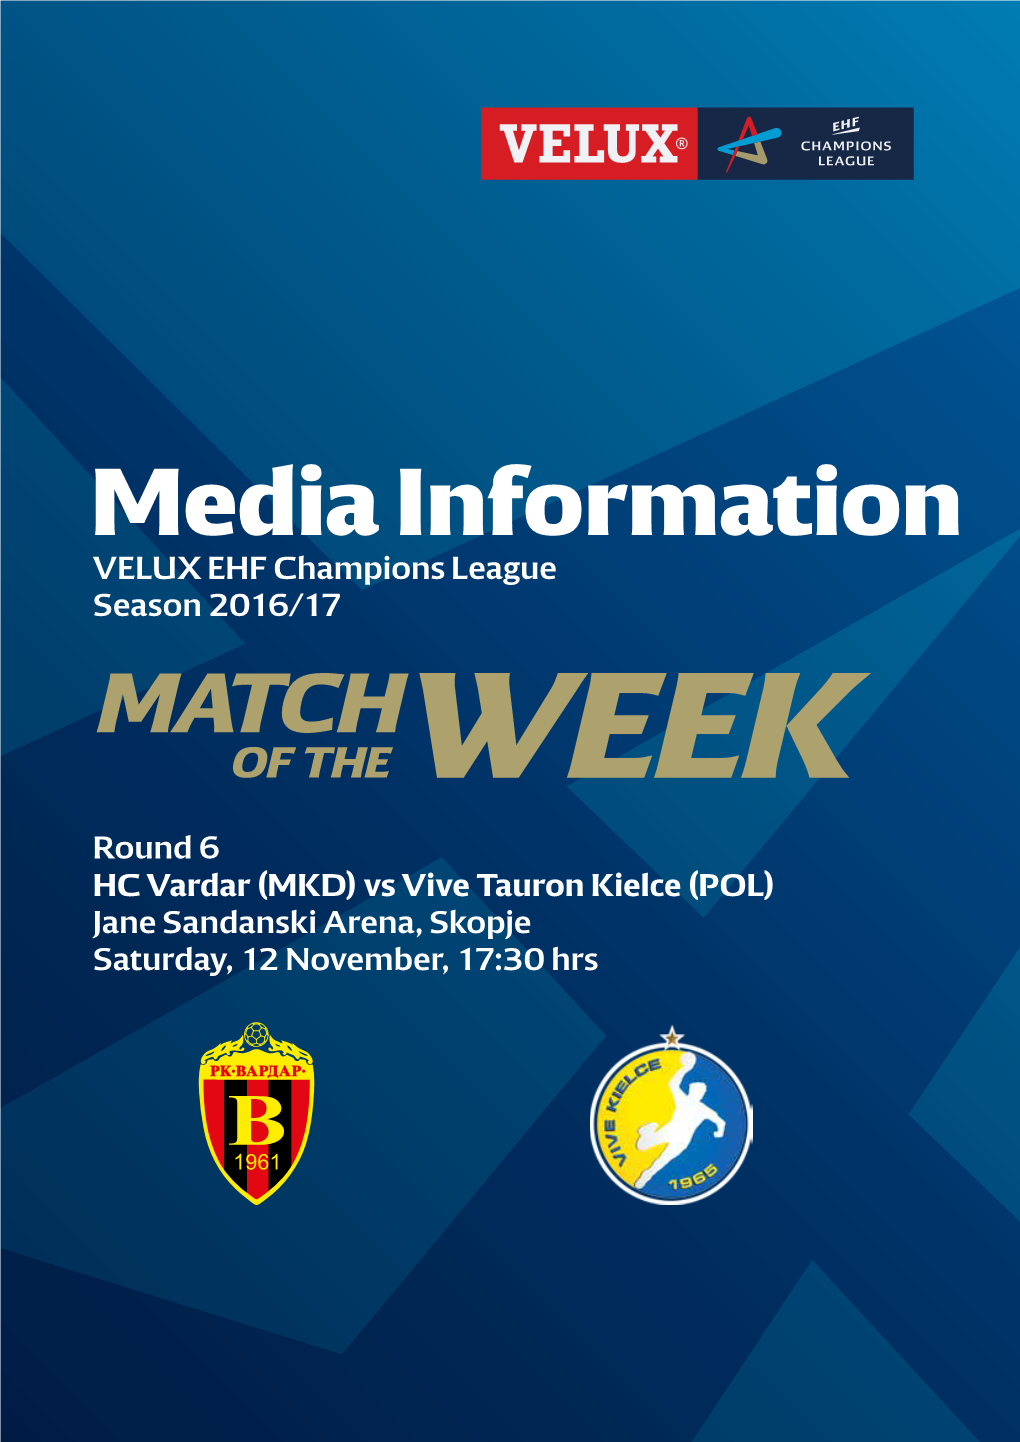 HC Vardar (MKD) Vs Vive Tauron Kielce (POL) Jane Sandanski Arena, Skopje Saturday, 12 November, 17:30 Hrs GROUP B Round 6